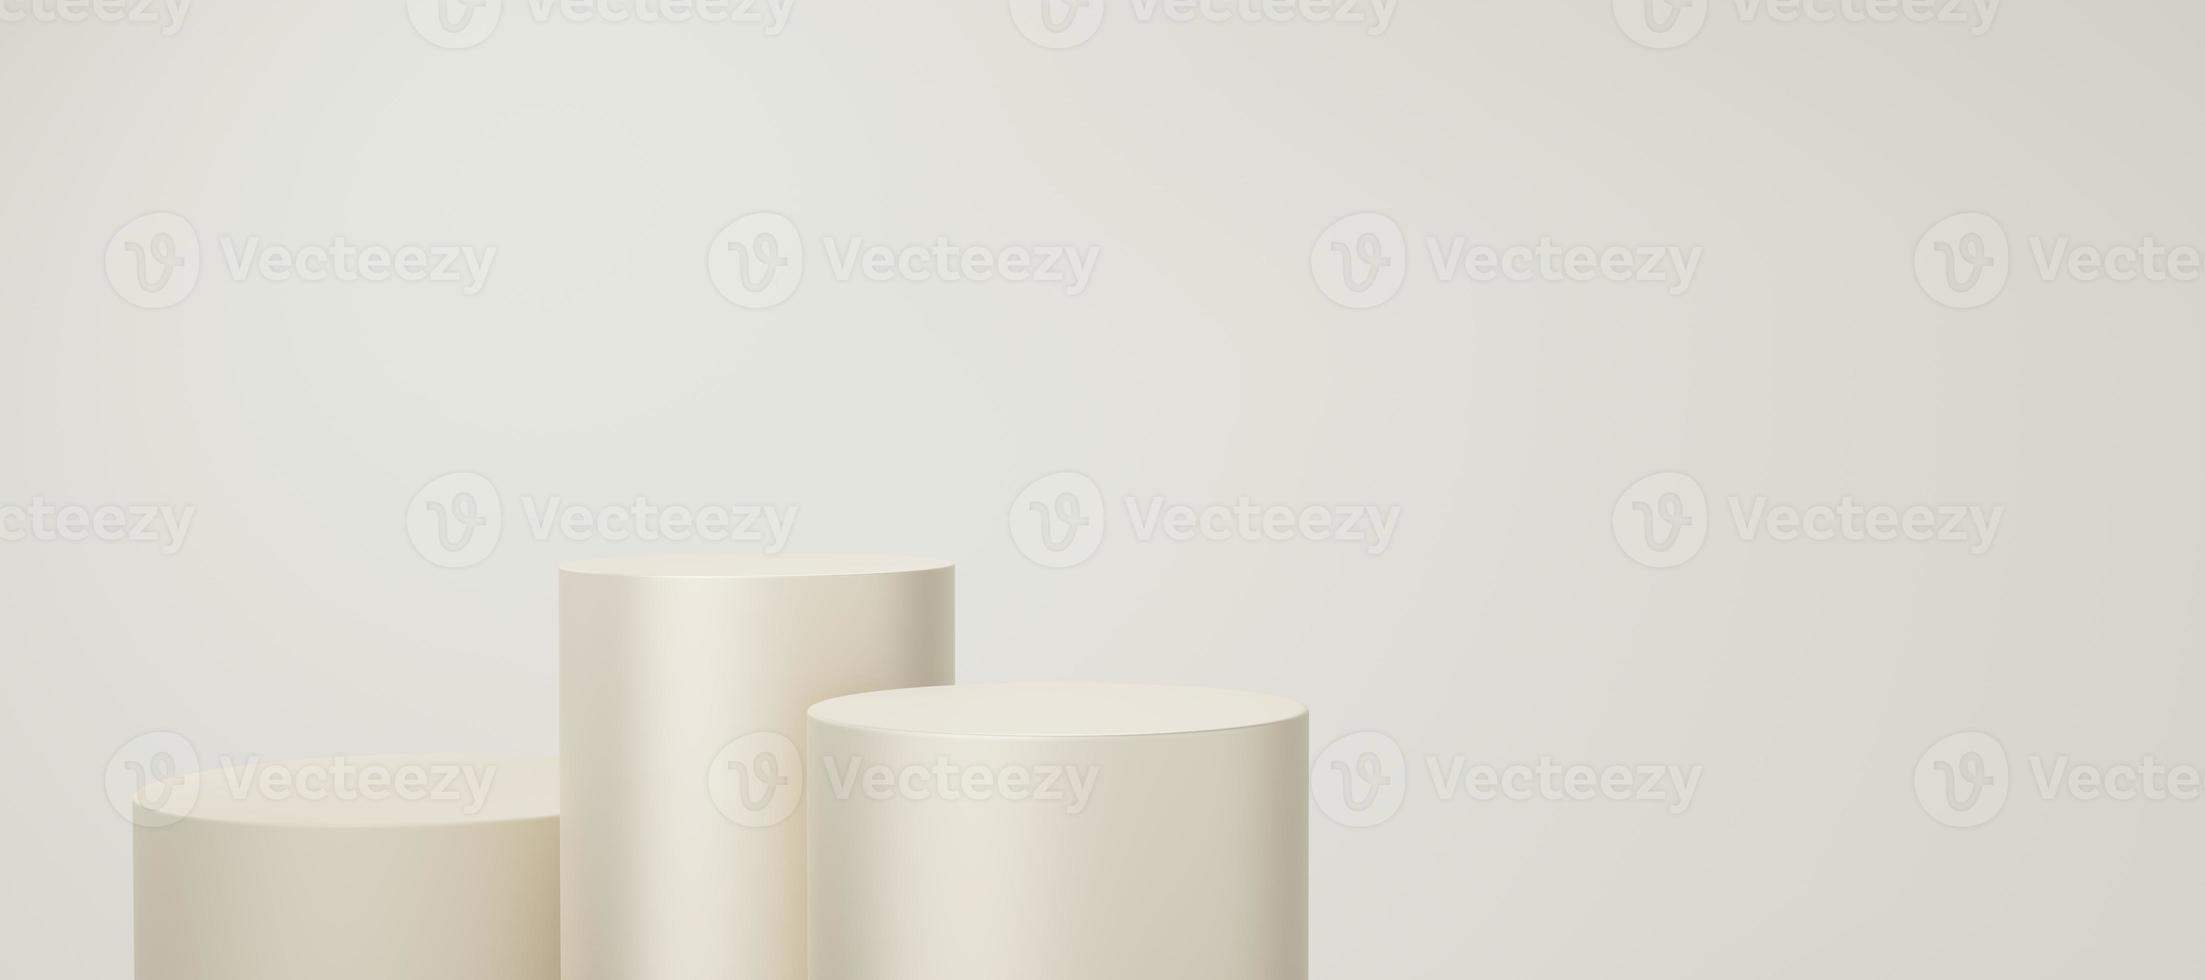 3 pódio de cilindro amarelo ou creme vazio flutuando no fundo do espaço da cópia branca do osso. objeto de forma geométrica 3d estúdio mínimo abstrato. espaço de maquete de pedestal para exibição de design de produto. renderização 3D. foto